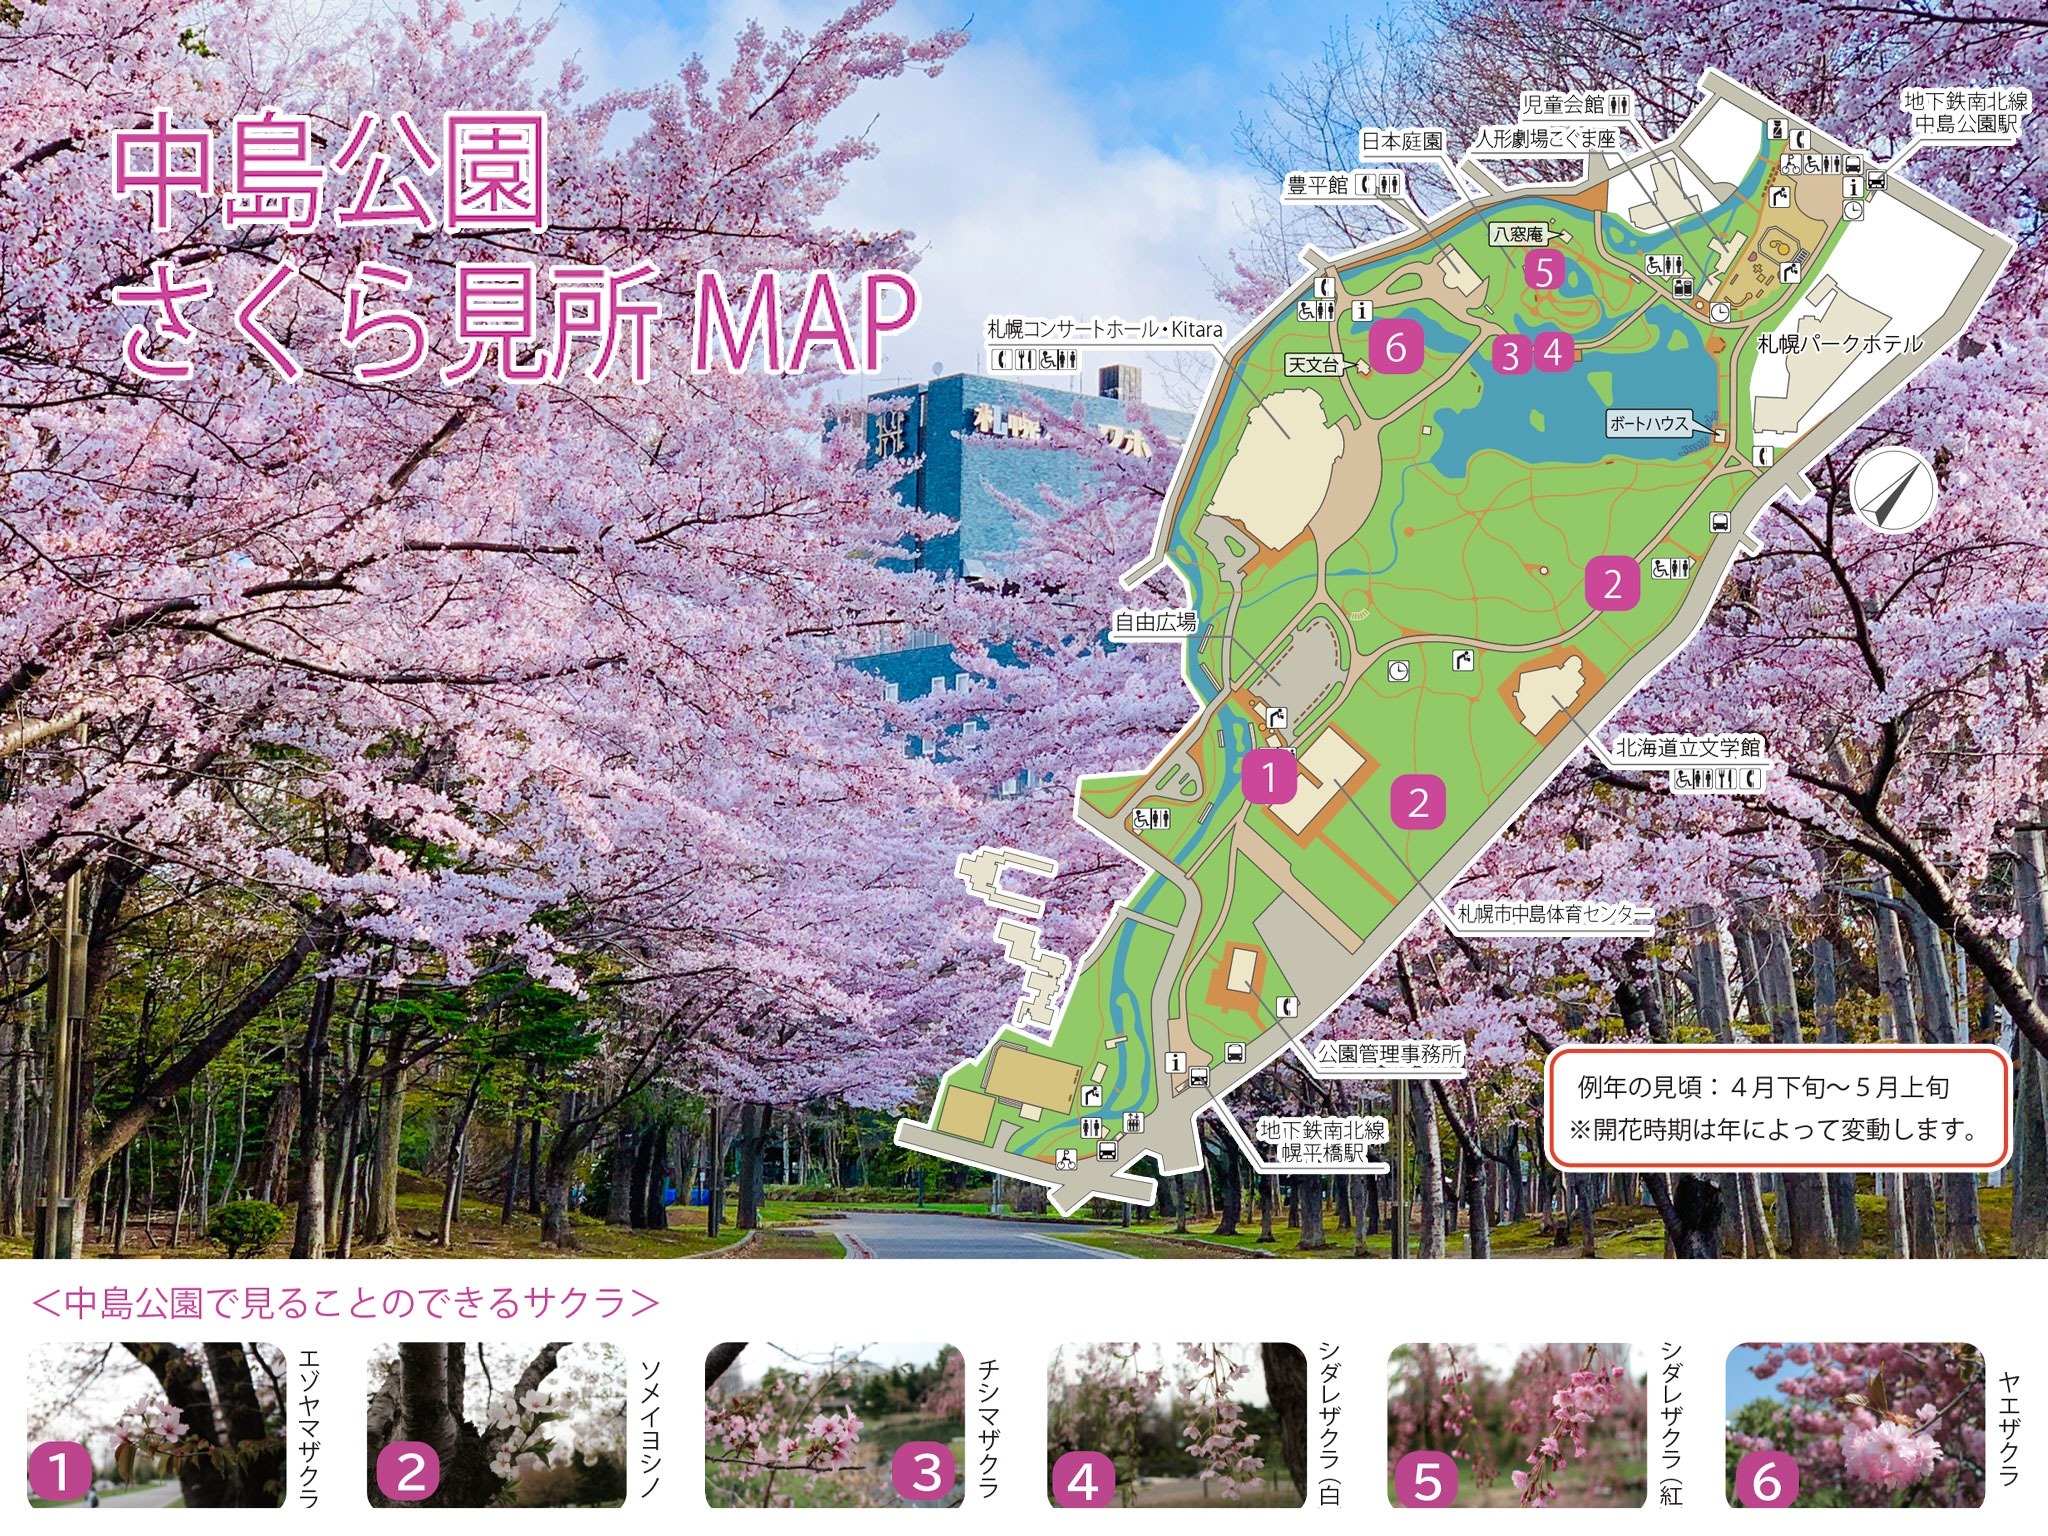 最大7名・札幌中心部から地下鉄5分/最寄駅から徒歩1分/中島公園まで5分とアクセス良好!